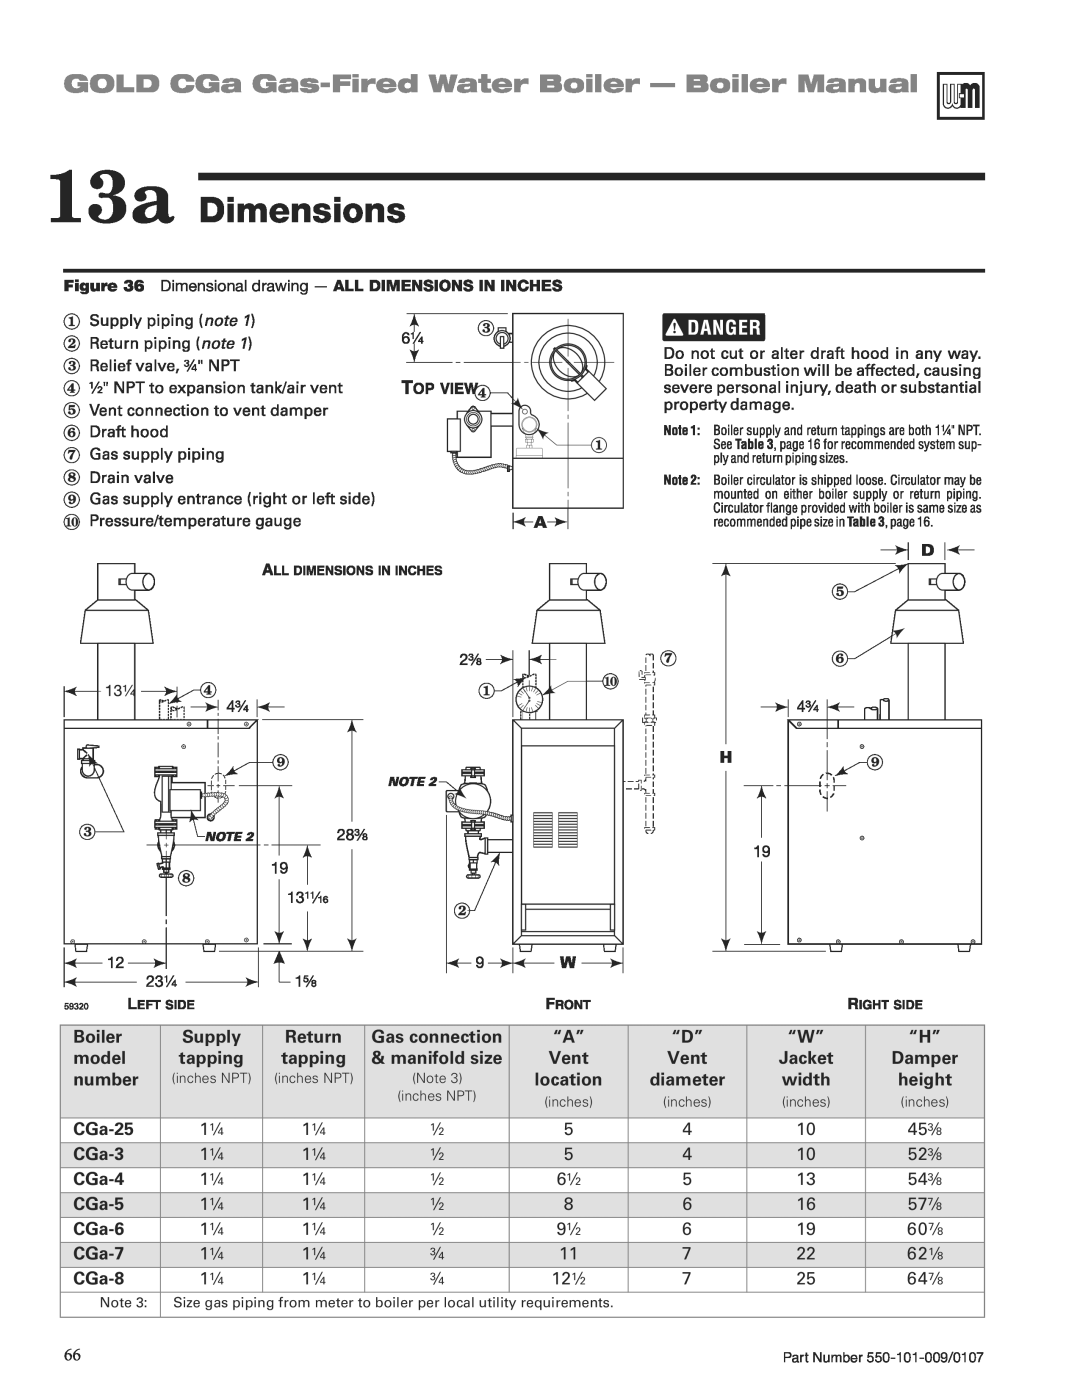 Weil-McLain CGA25SPDN 13a Dimensions, GOLD CGa Gas-FiredWater Boiler - Boiler Manual, 453/8, 523/8, 61/2, 543/8, 577/8 